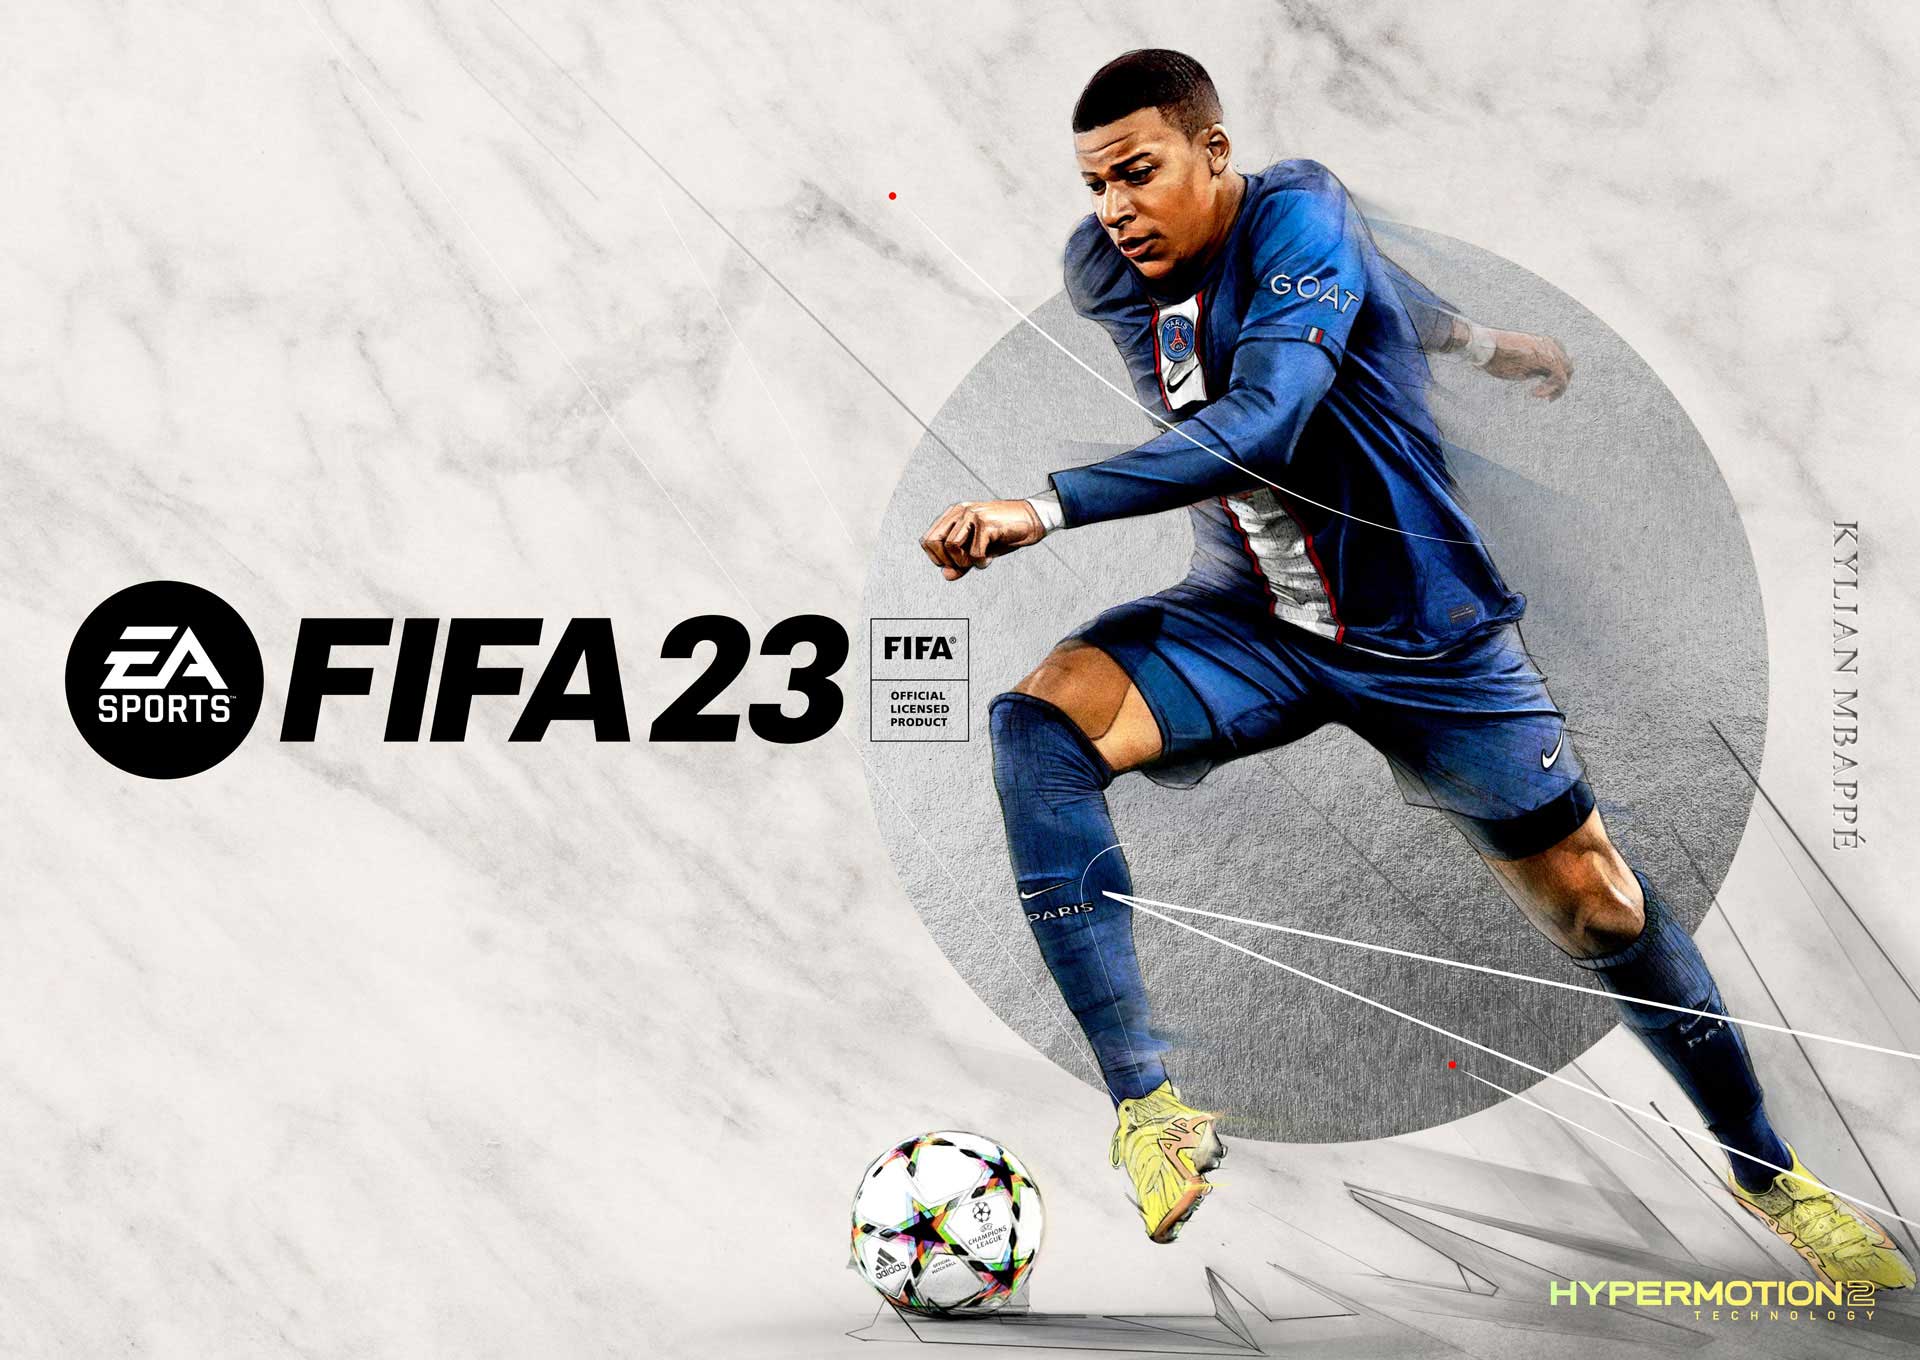 FIFA 23, Gamers Profiles, gamersprofiles.com